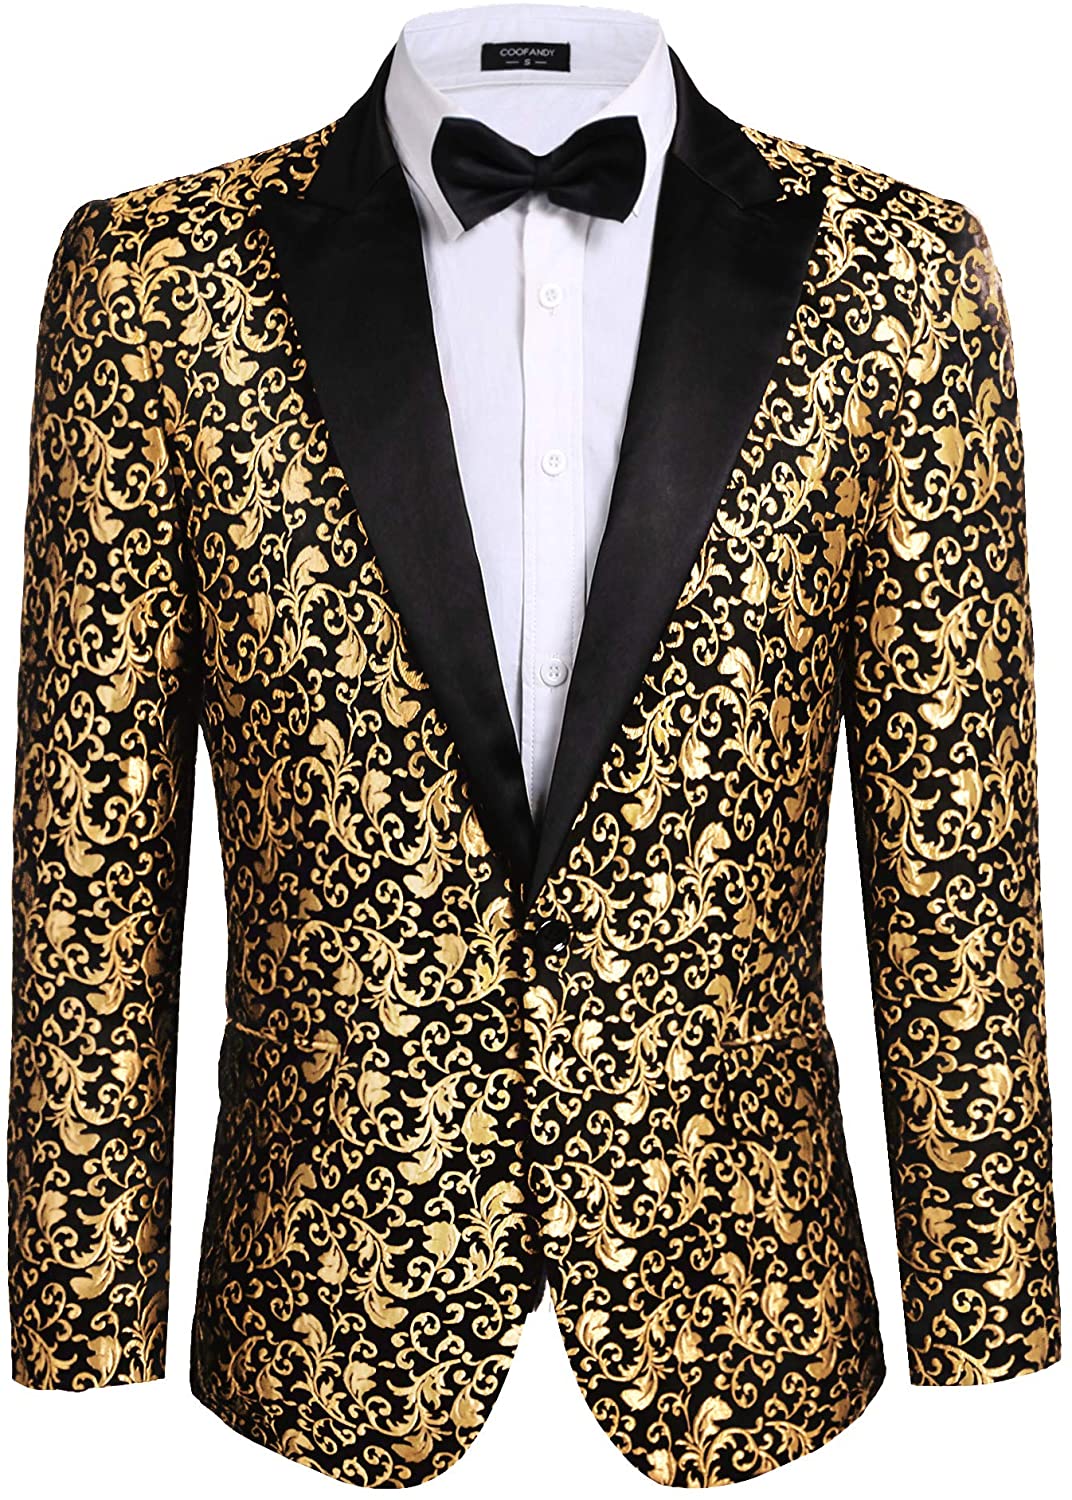 COOFANDY Mens Floral Party Dress Suit Blazer Notched Lapel Jacket One Button Tuxedo